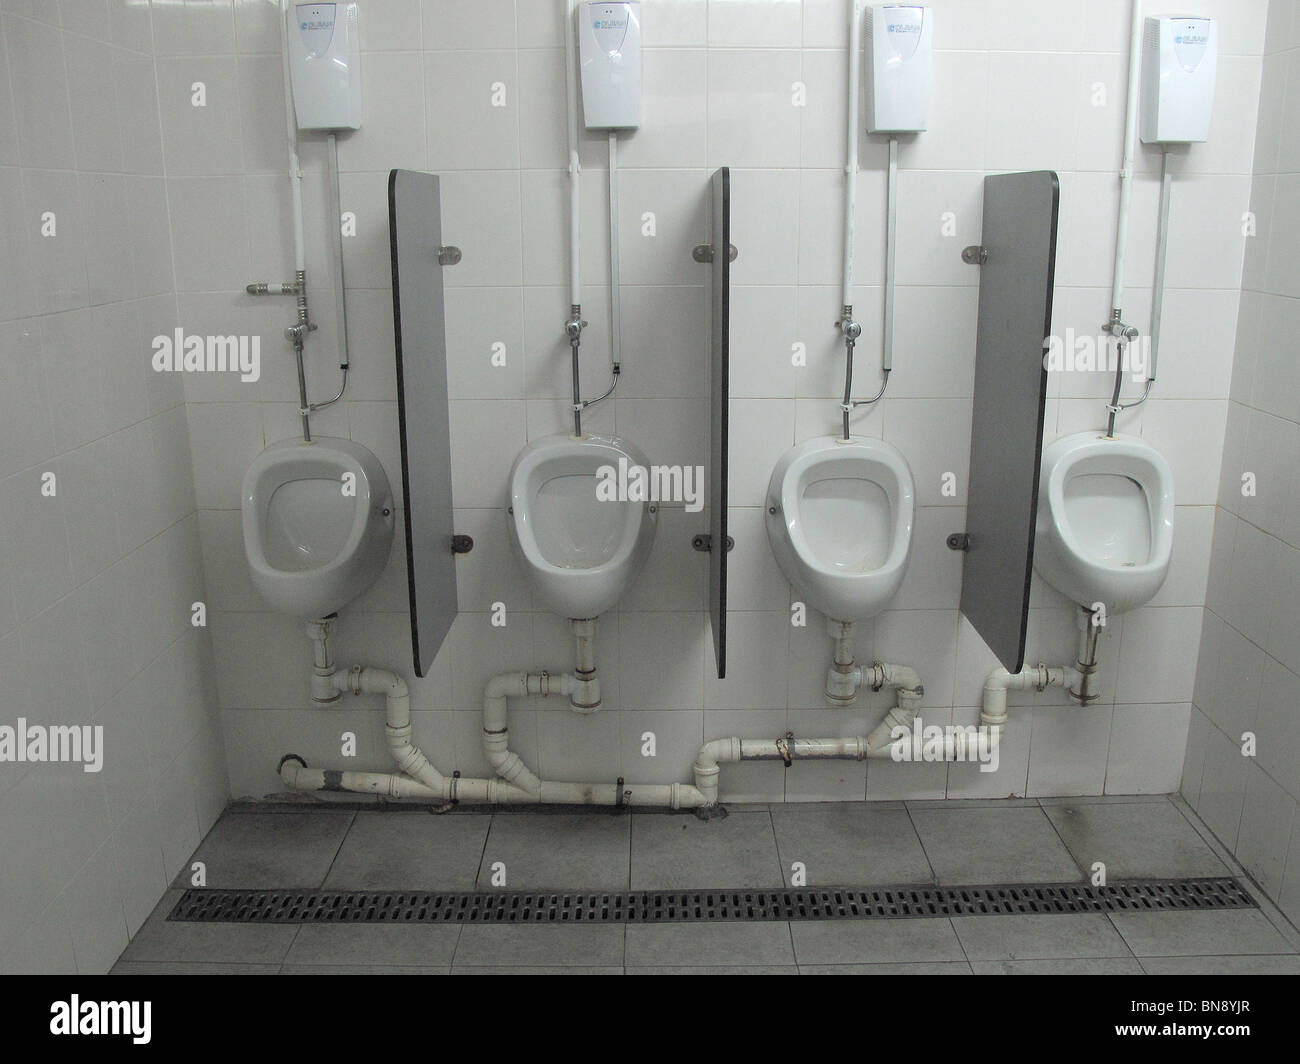 Mens urinoirs toilettes publiques au Portugal Photo Stock - Alamy